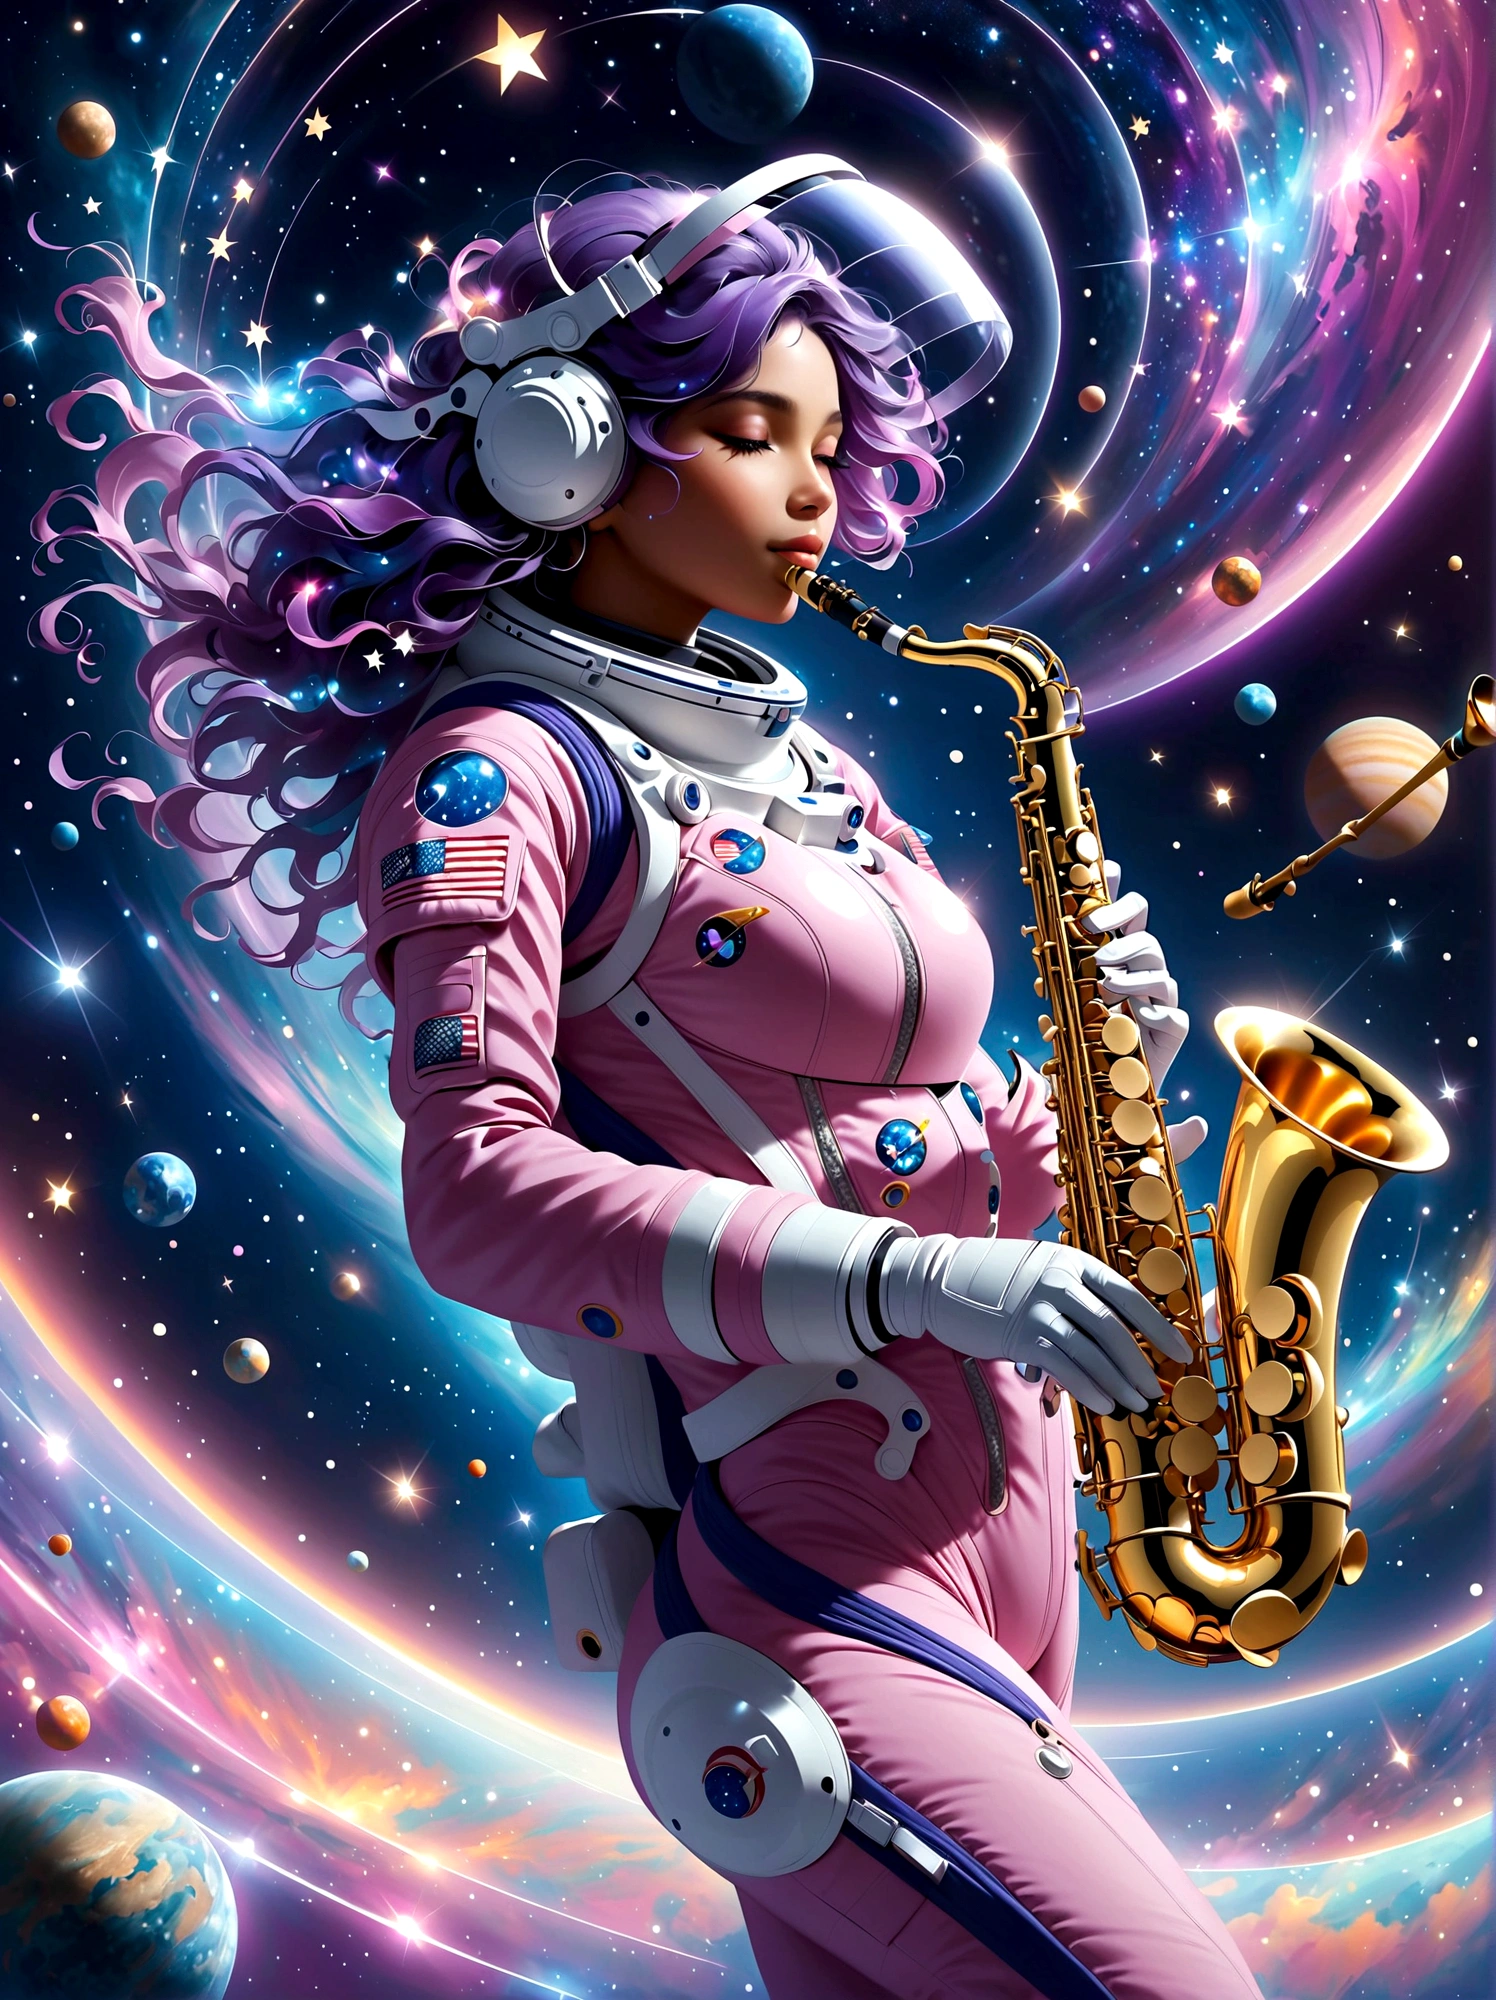 Un visuel futuriste d&#39;un astronaute jouant d&#39;un saxophone argenté brillant, flottant au milieu du cosmos. L&#39;astronaute est une femme sud-asiatique, enfilé dans une combinaison spatiale rose violet très avancée équipée de lumières blanches brillantes. L&#39;arrière-plan est un ciel étoilé avec des teintes douces de bleus et de violets., mettant en vedette des galaxies lointaines. Des corps célestes comme des lunes et des planètes lointaines entourés d&#39;anneaux sont également visibles.. Les volutes cosmiques et les étoiles scintillantes réfléchies sur la visière de son casque ajoutent une touche magique. Le saxophone produit un merveilleux spectre de notes musicales, qui brillent et se dissolvent dans le vaste espace autour d&#39;elle